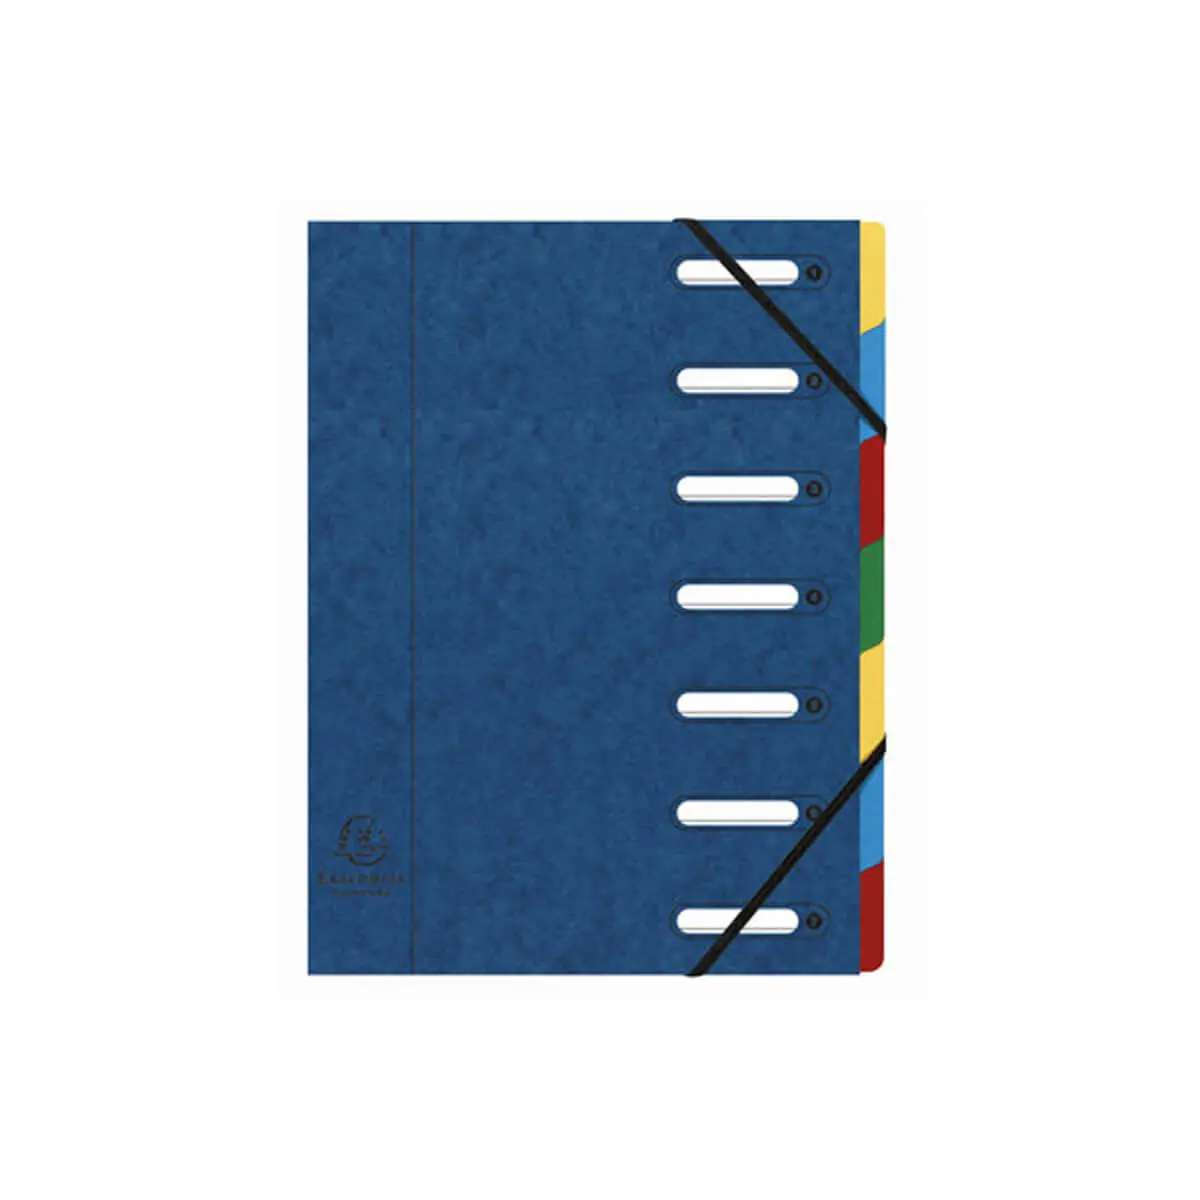 Trieur HARMONIKA® à fenêtres avec élastiques Nature Future carte lustrée 7 compartiments - Bleu - EXACOMPTA photo du produit